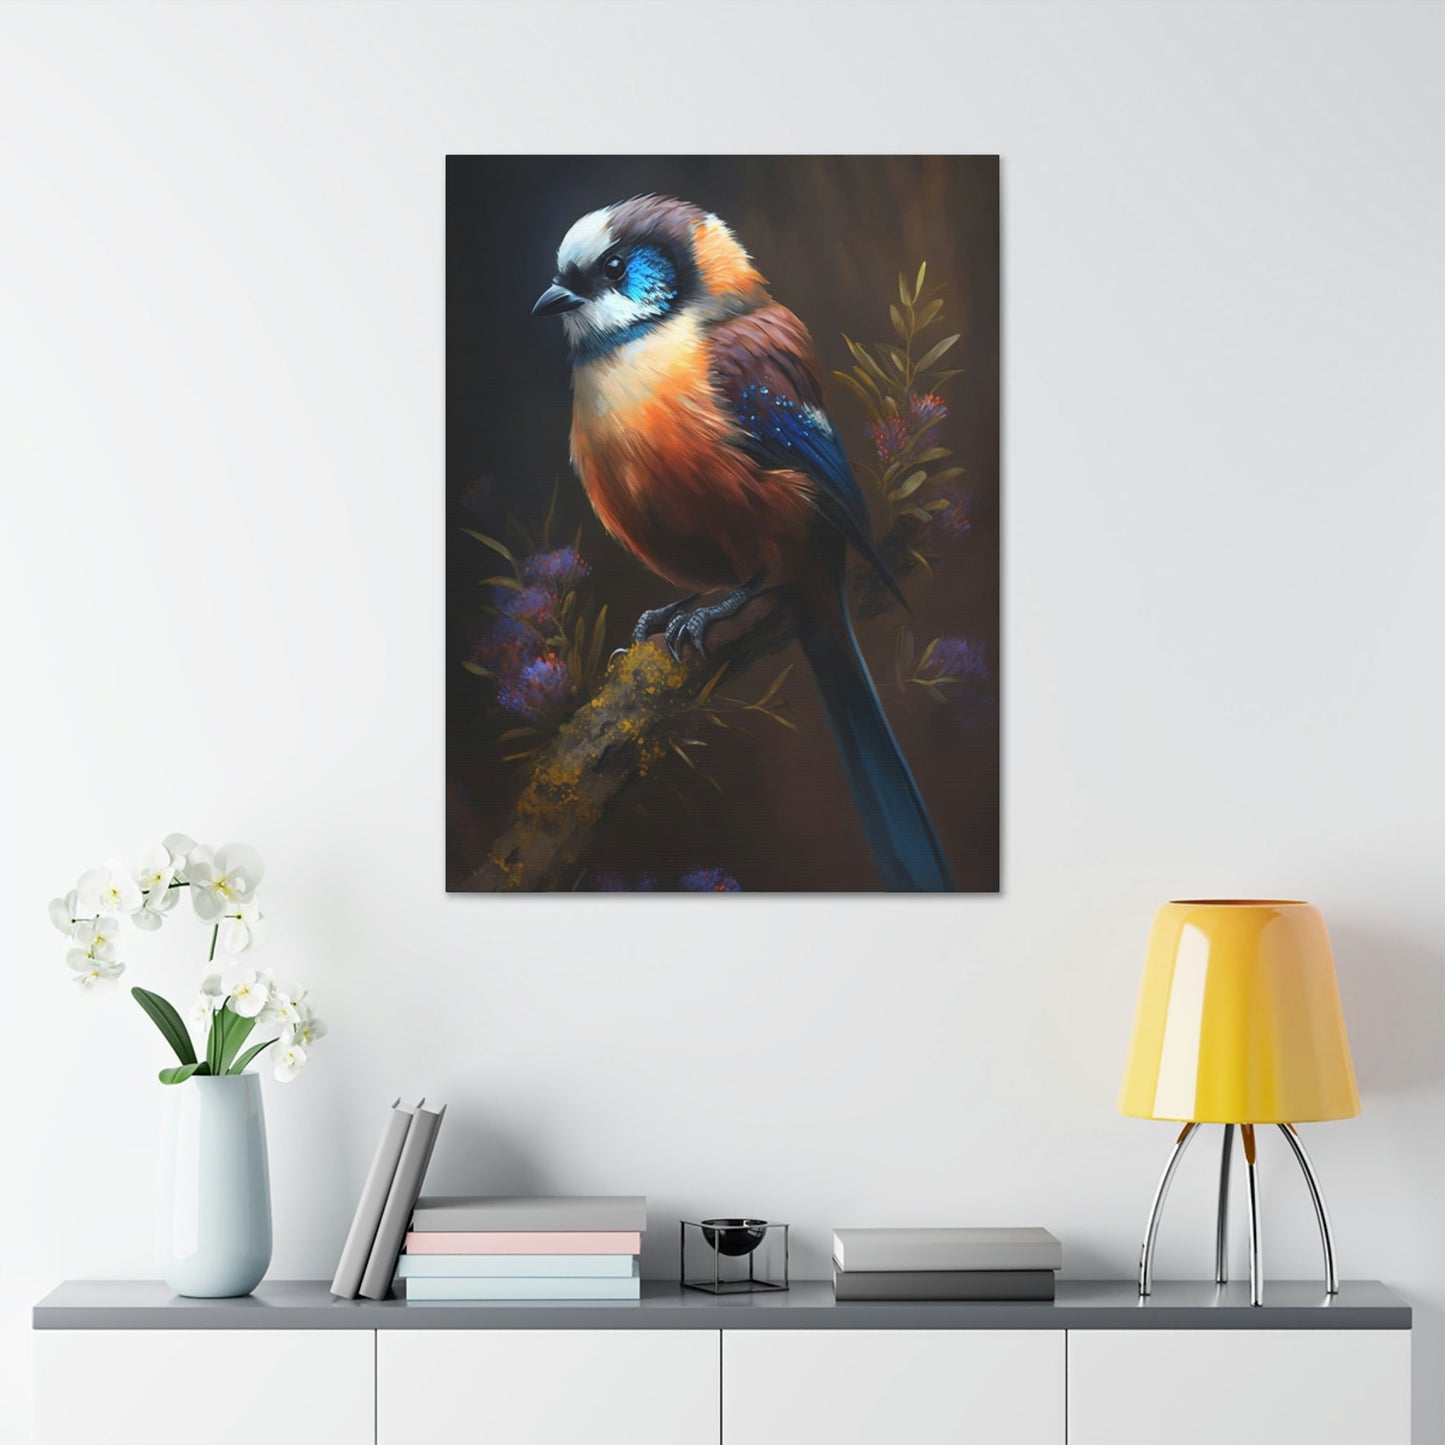 The Playful Bird: Canvas & Poster Wall Art of Bird Frolicking in a Field